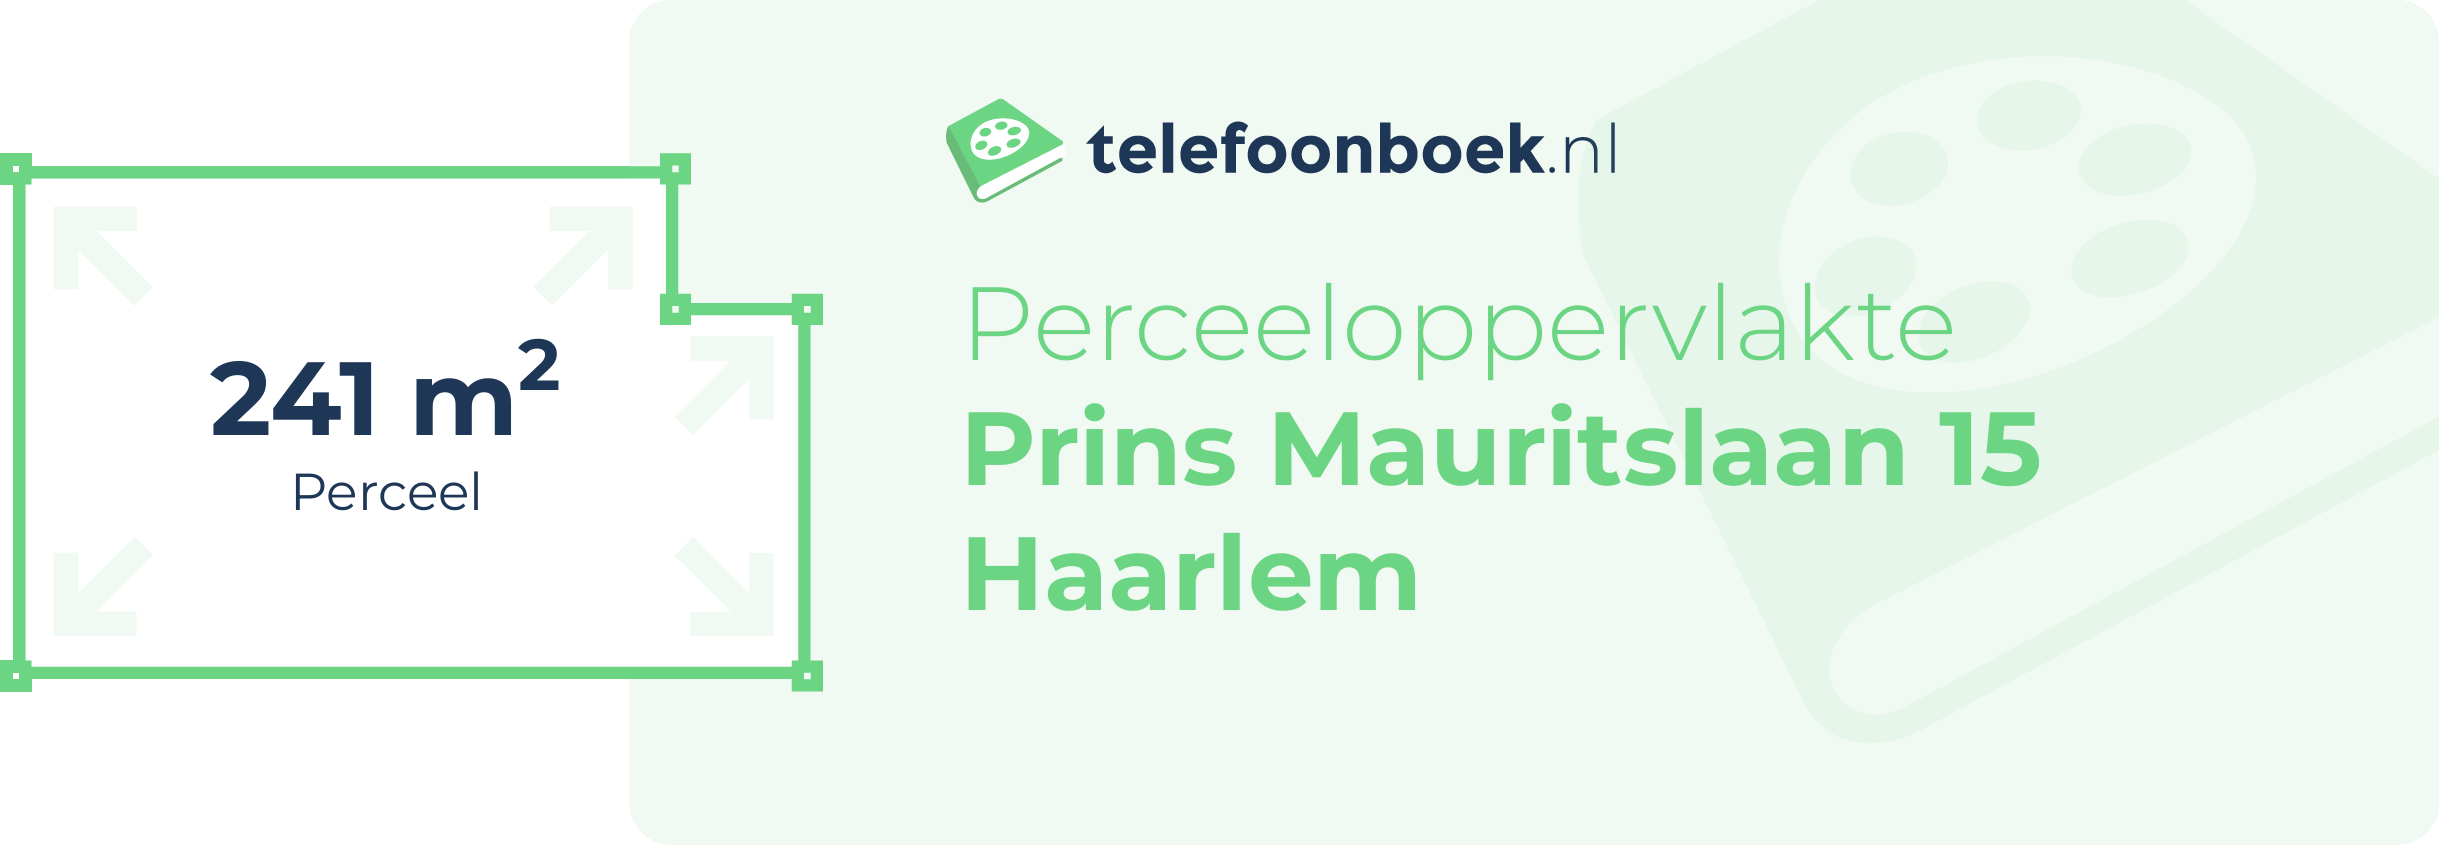 Perceeloppervlakte Prins Mauritslaan 15 Haarlem